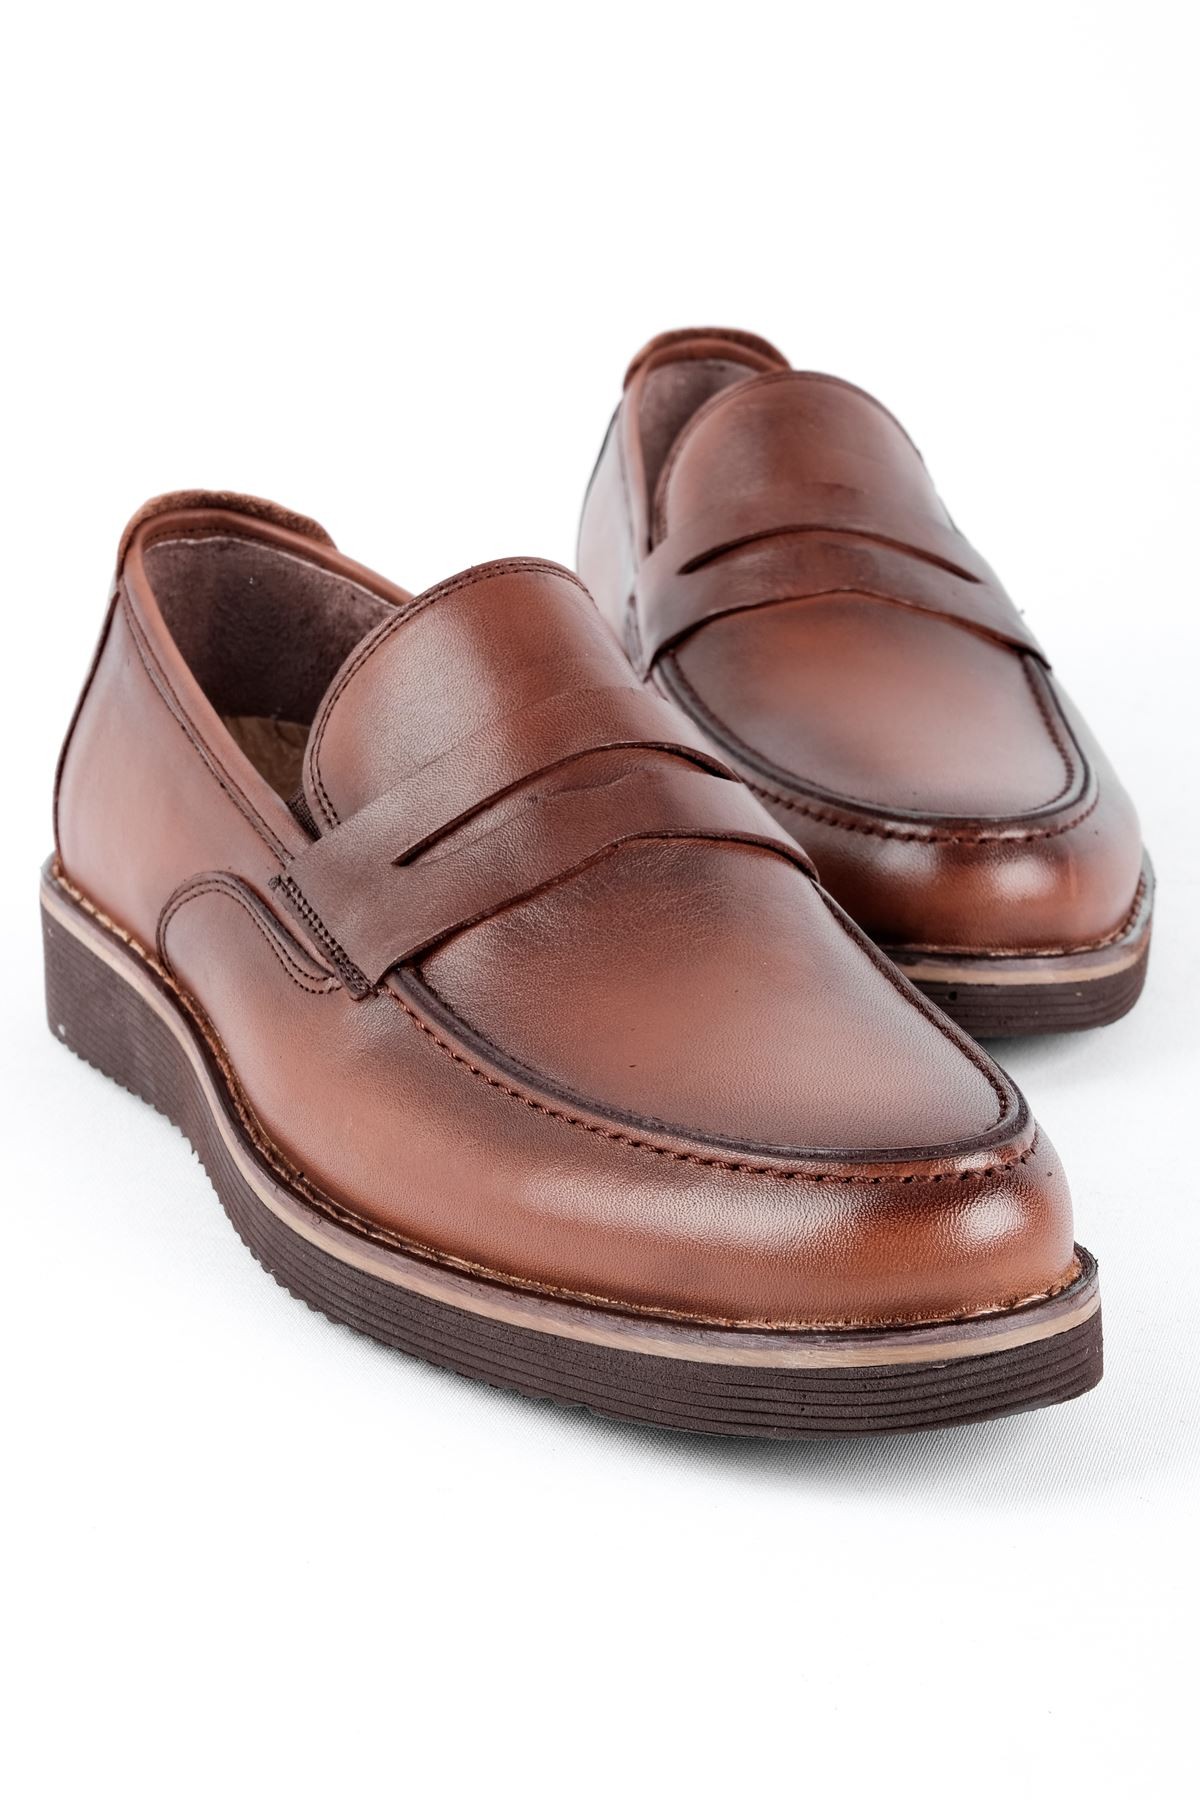 James Erkek Hakiki Deri Ayakkabı Klasik - Kahverengi